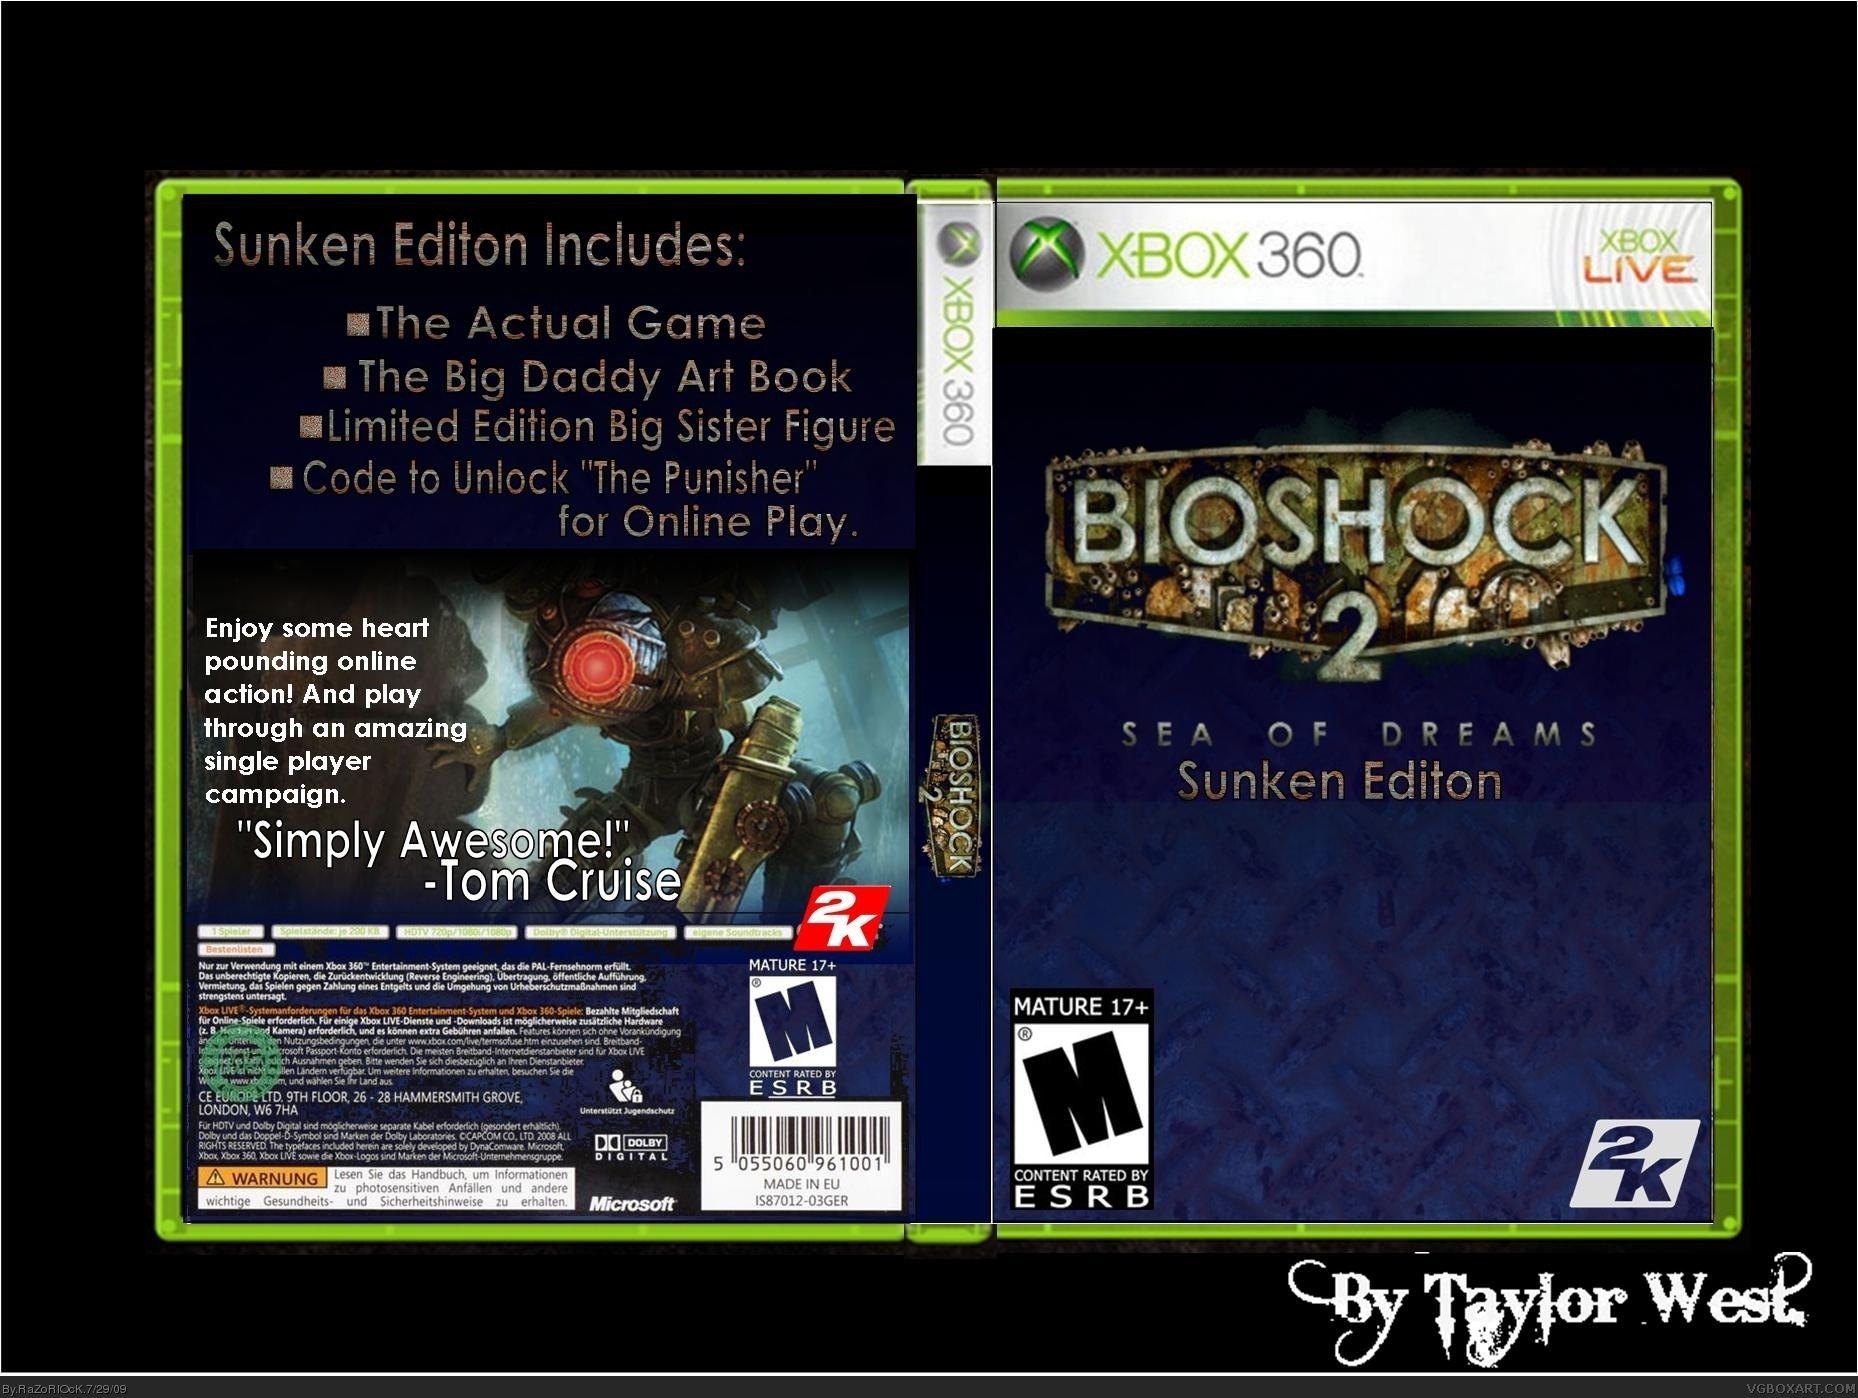 Bioshock 2: Sea of Dreams box cover